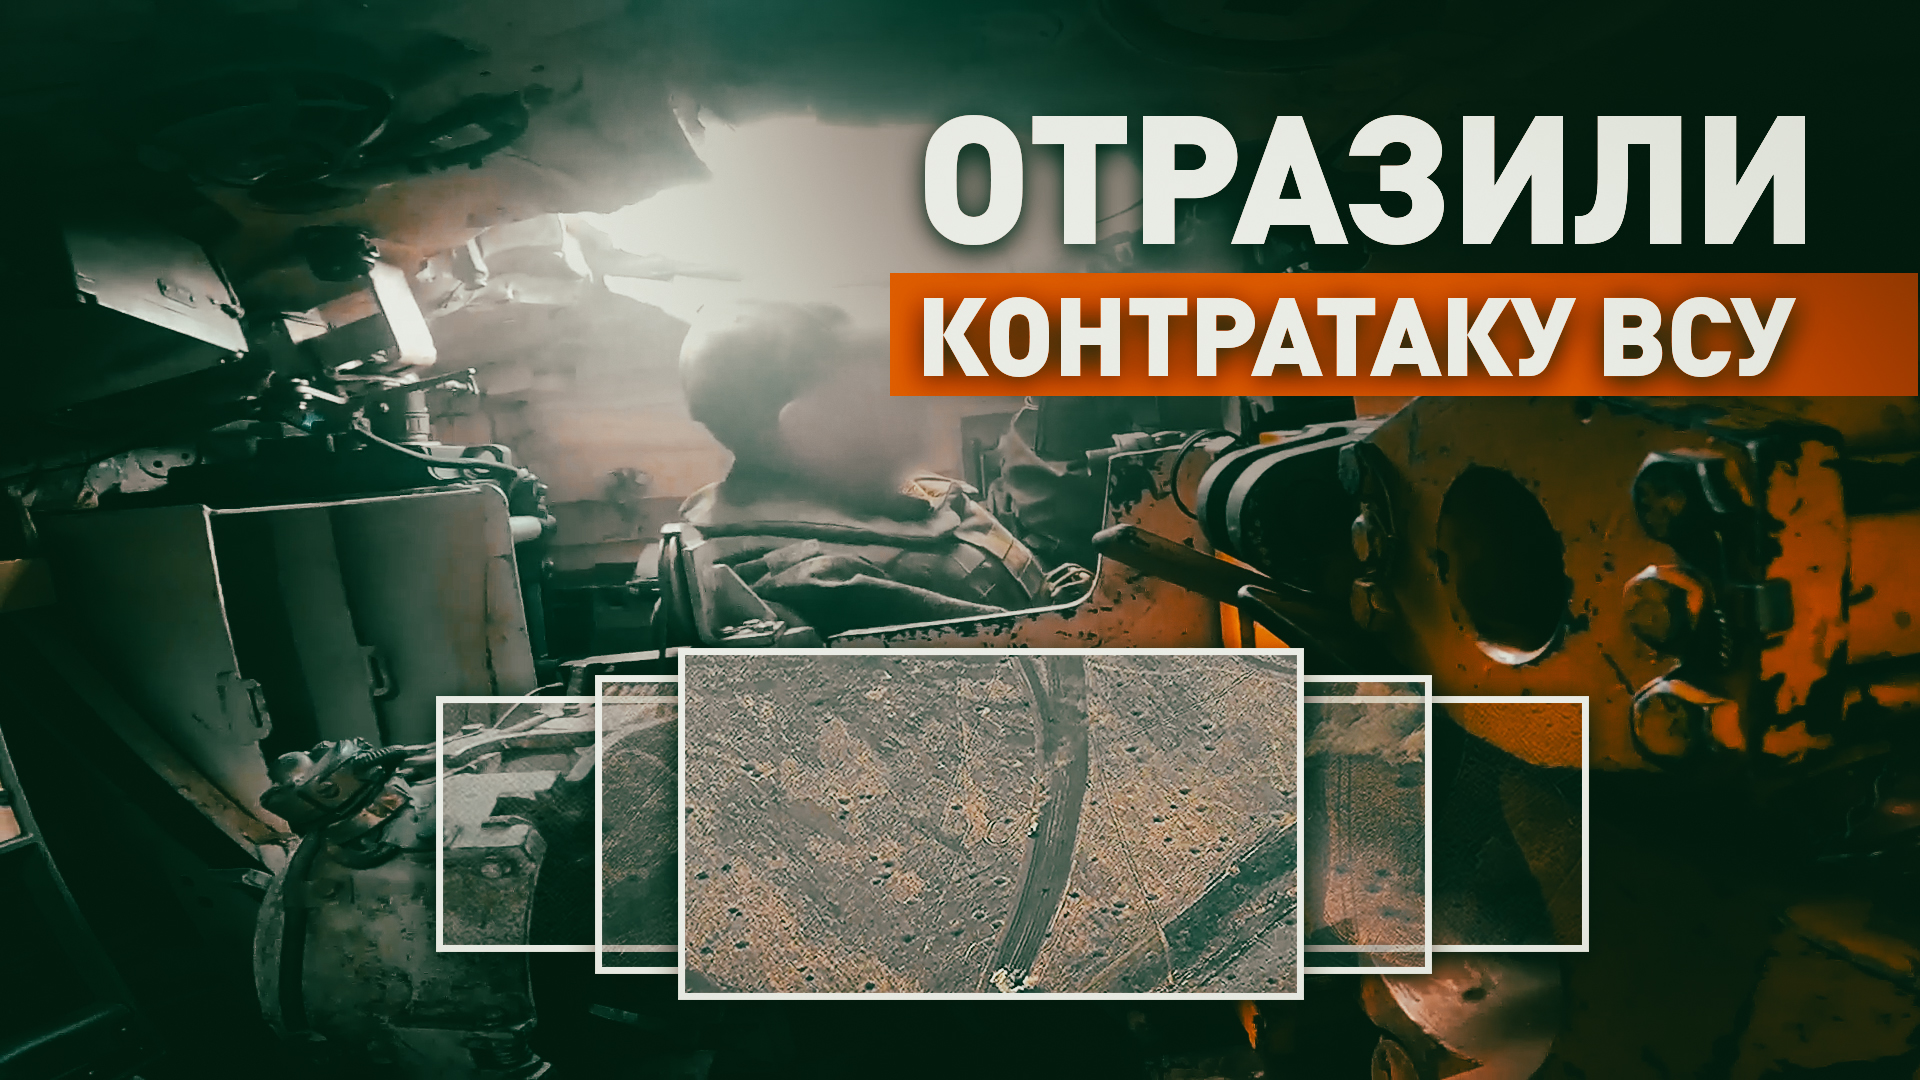 Российские танкисты отбили контратаку ВСУ на Авдеевском направлении